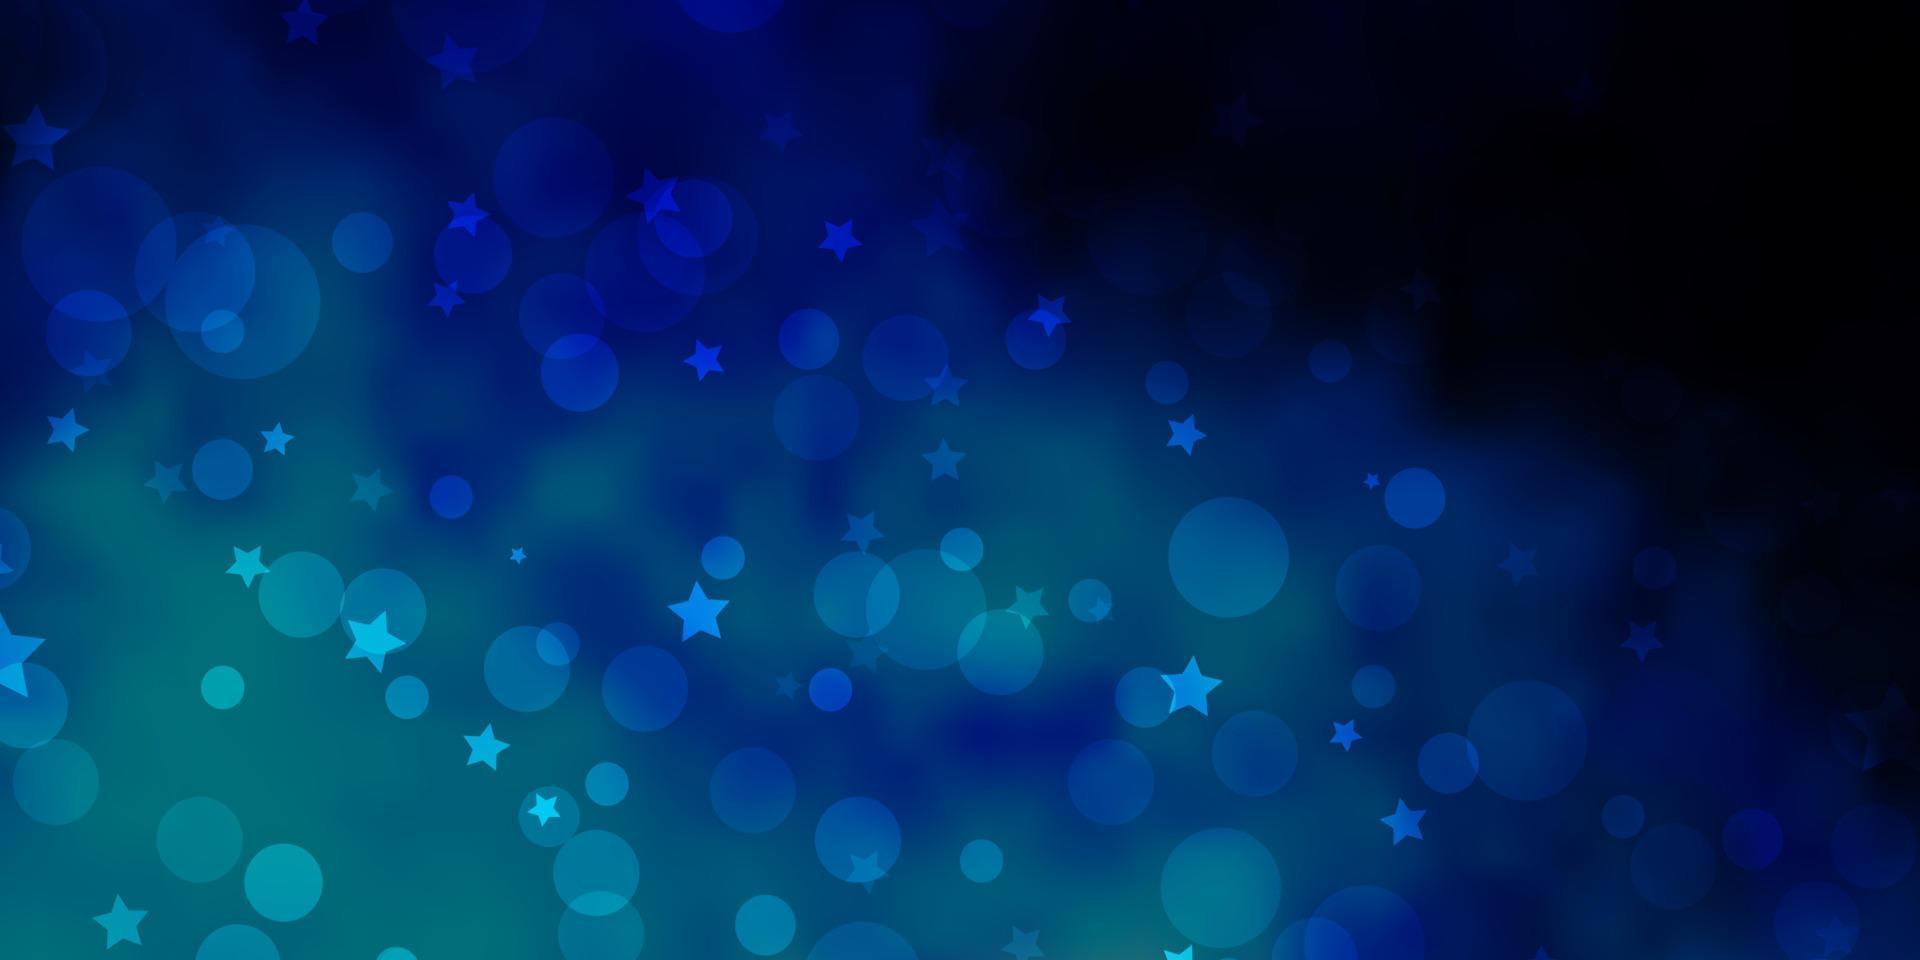 mörkrosa, blå vektorbakgrund med cirklar, stjärnor. vektor